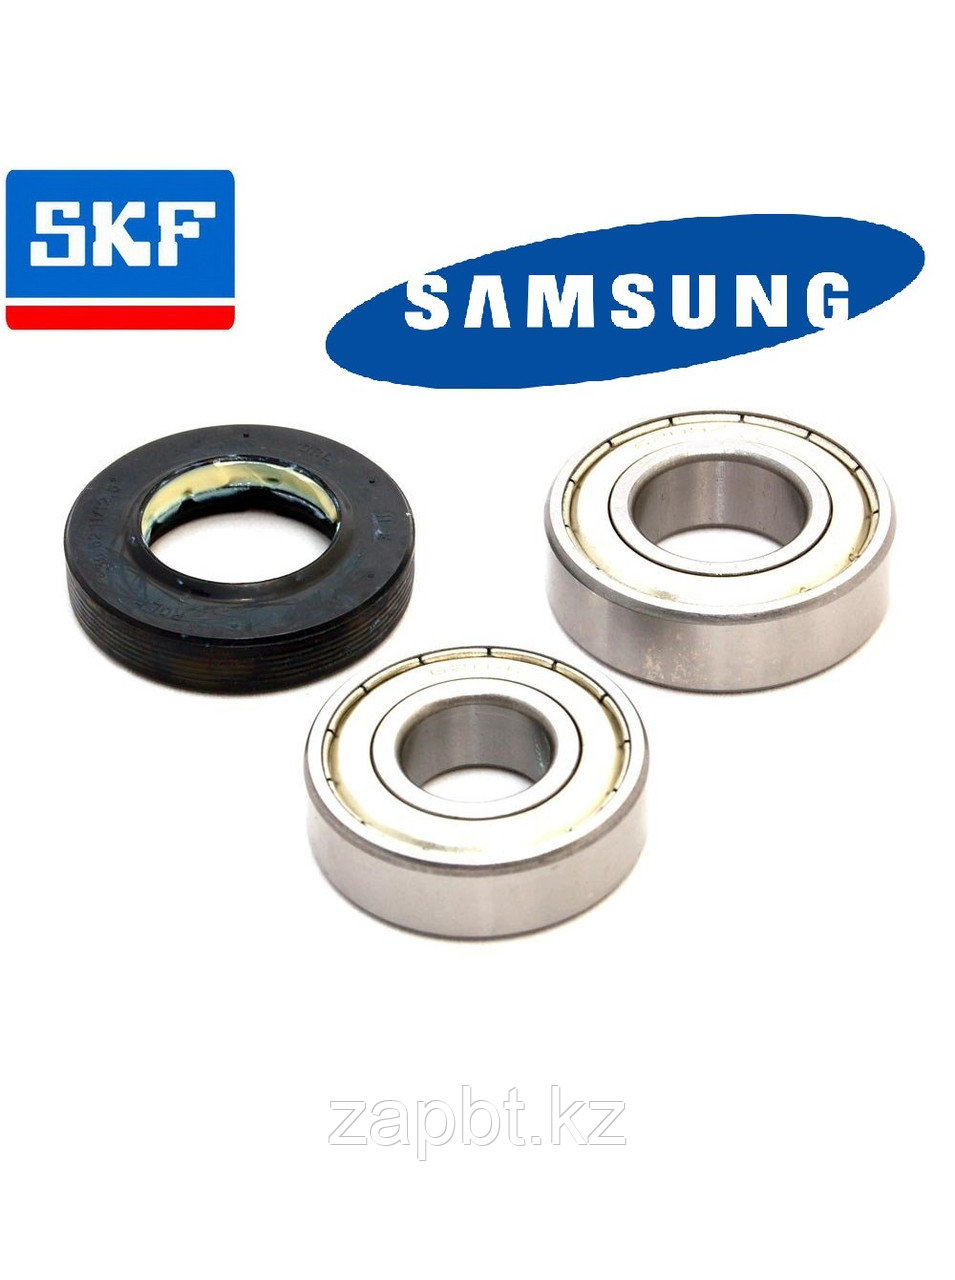 Ремкомплект подшипников SKF и сальник  для стиральных машин Samsung 35x75.55x10/12  6205 - 6206